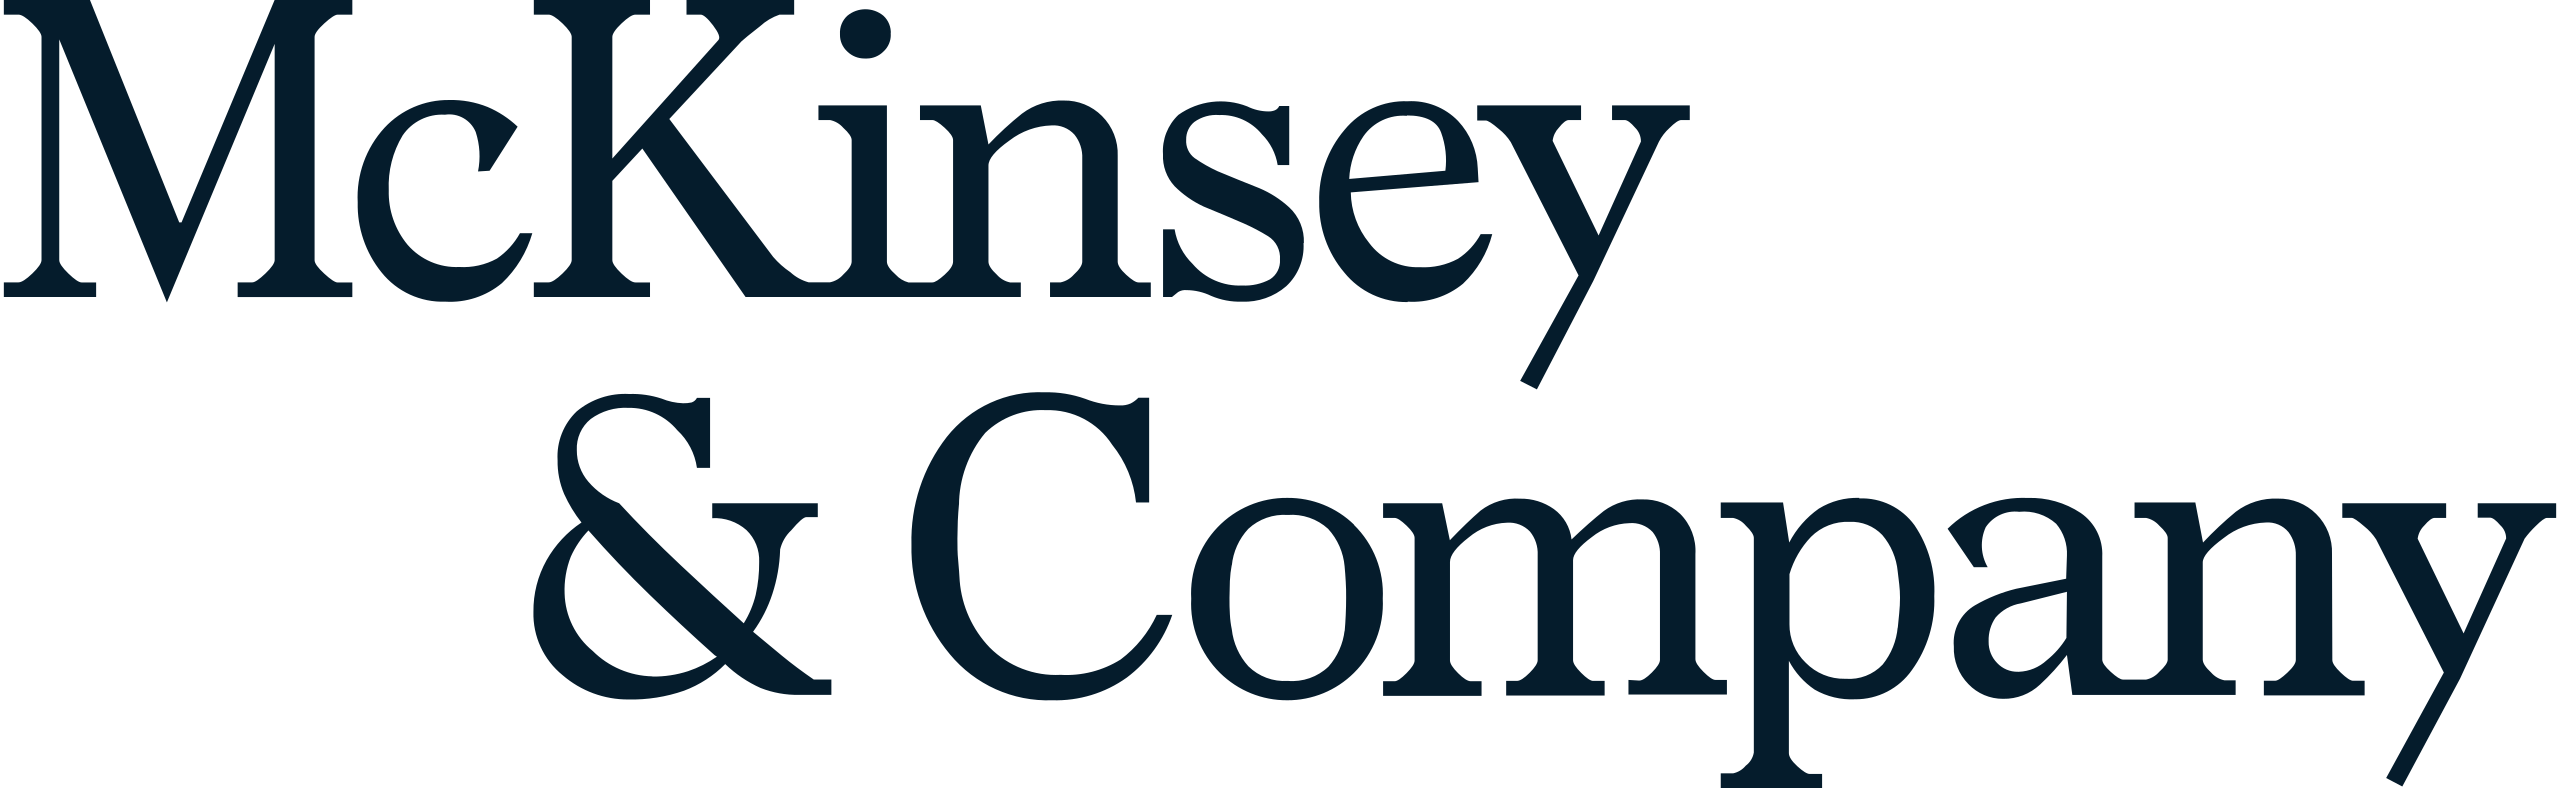 McKinsey_Logo